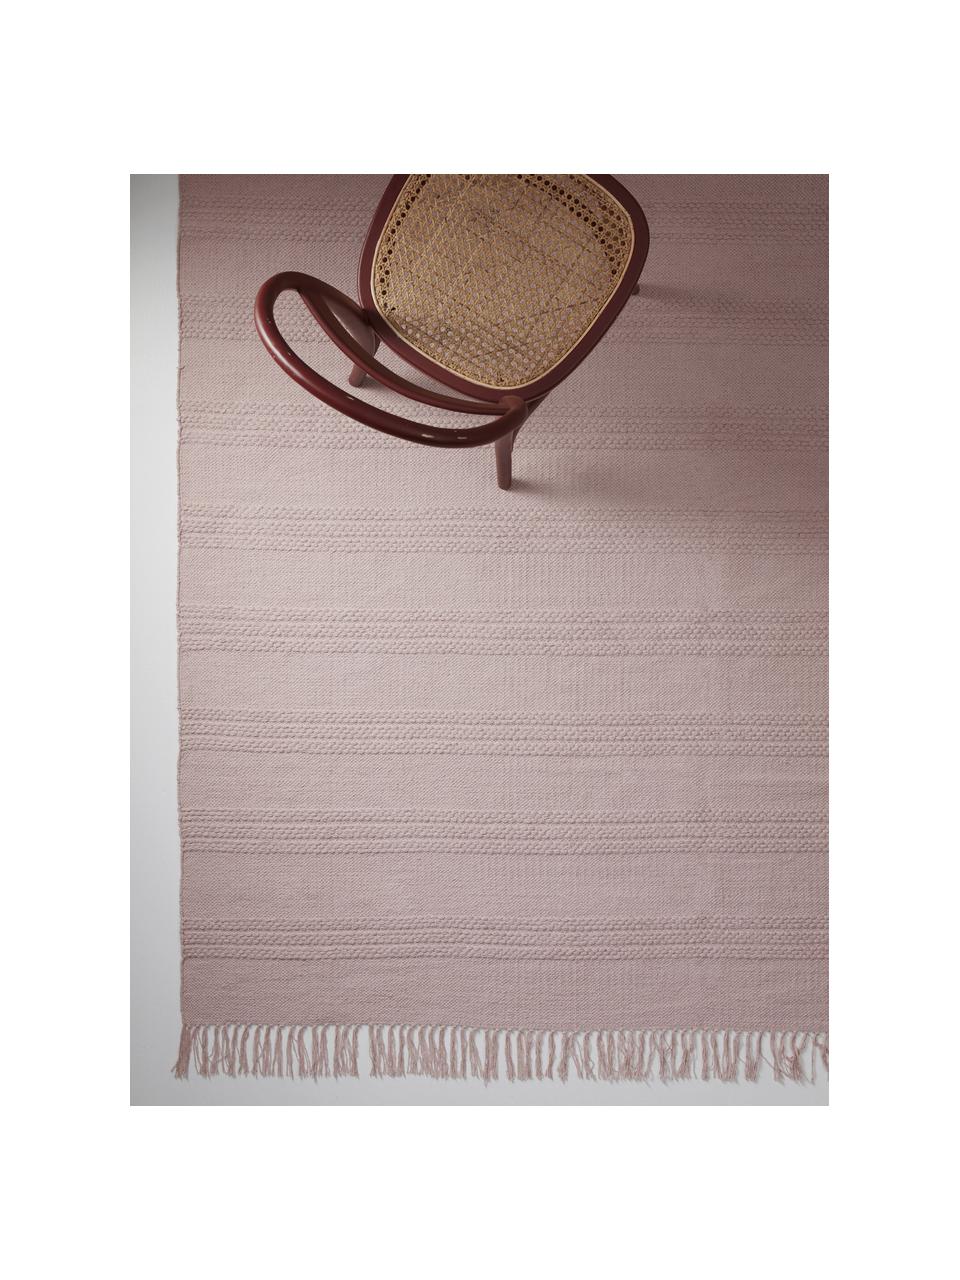 Baumwollteppich Tanya mit Ton-in-Ton-Webstreifenstruktur und Fransenabschluss, 100% Baumwolle, Rosa, B 200 x L 300 cm (Größe L)